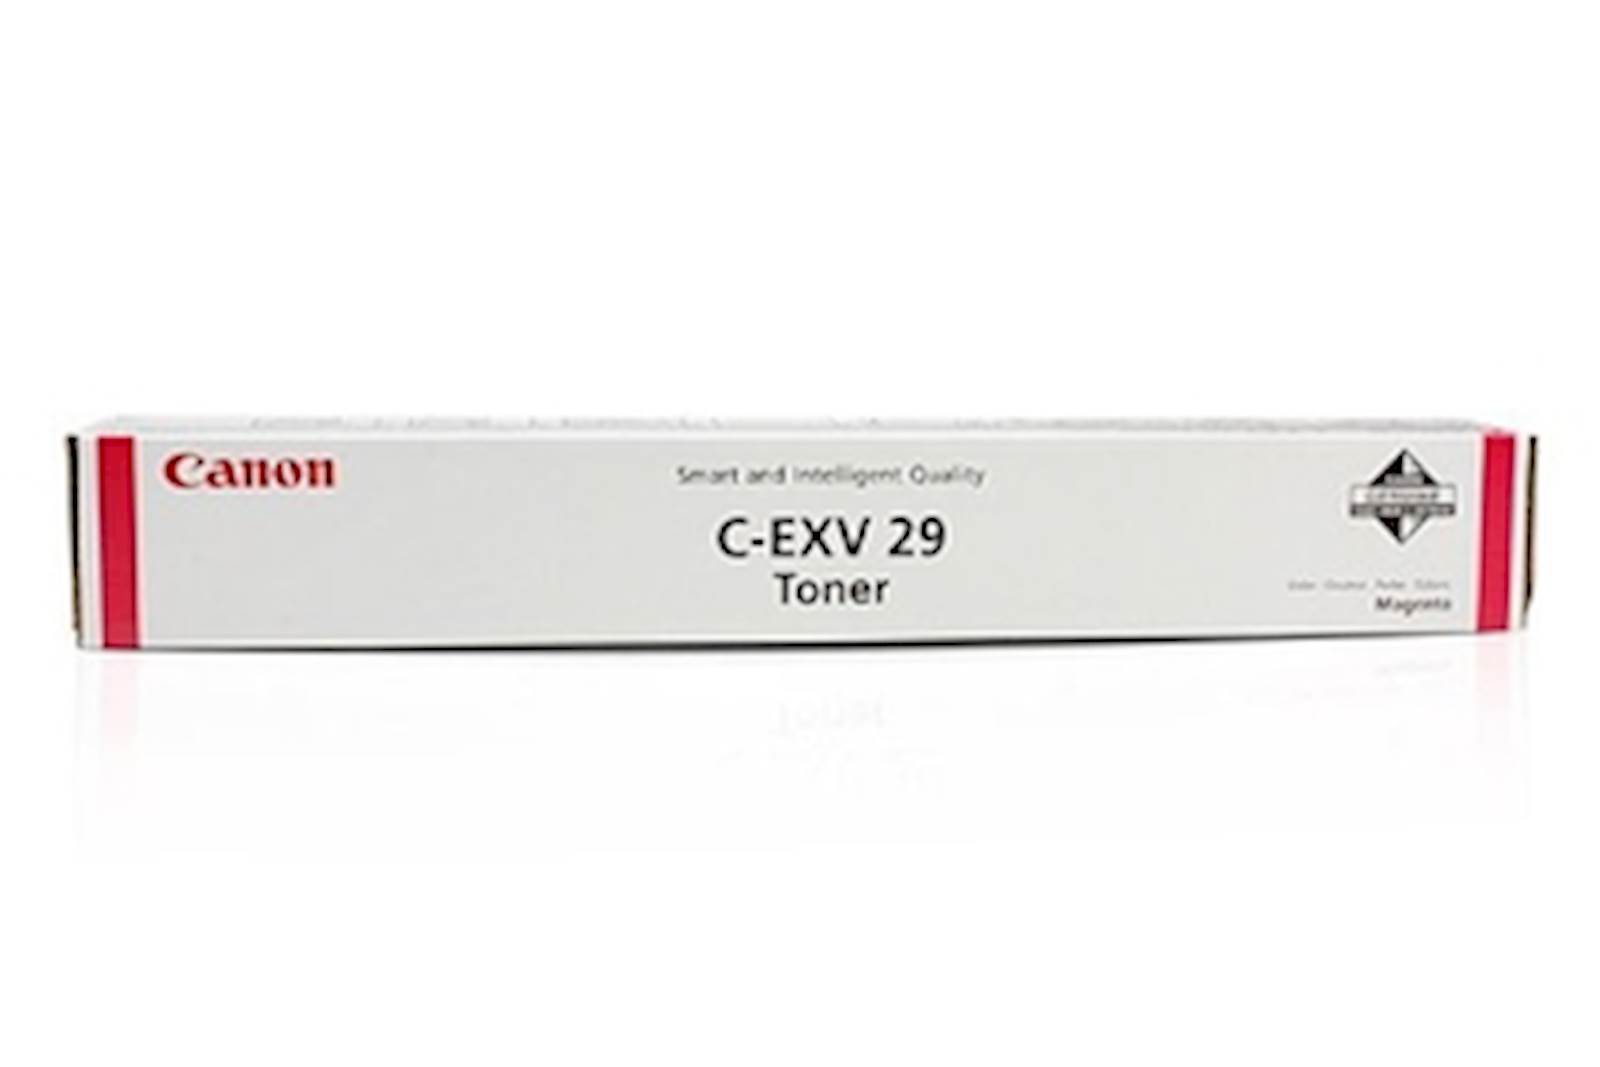 Toner CANON C-EXV 29 Magenta